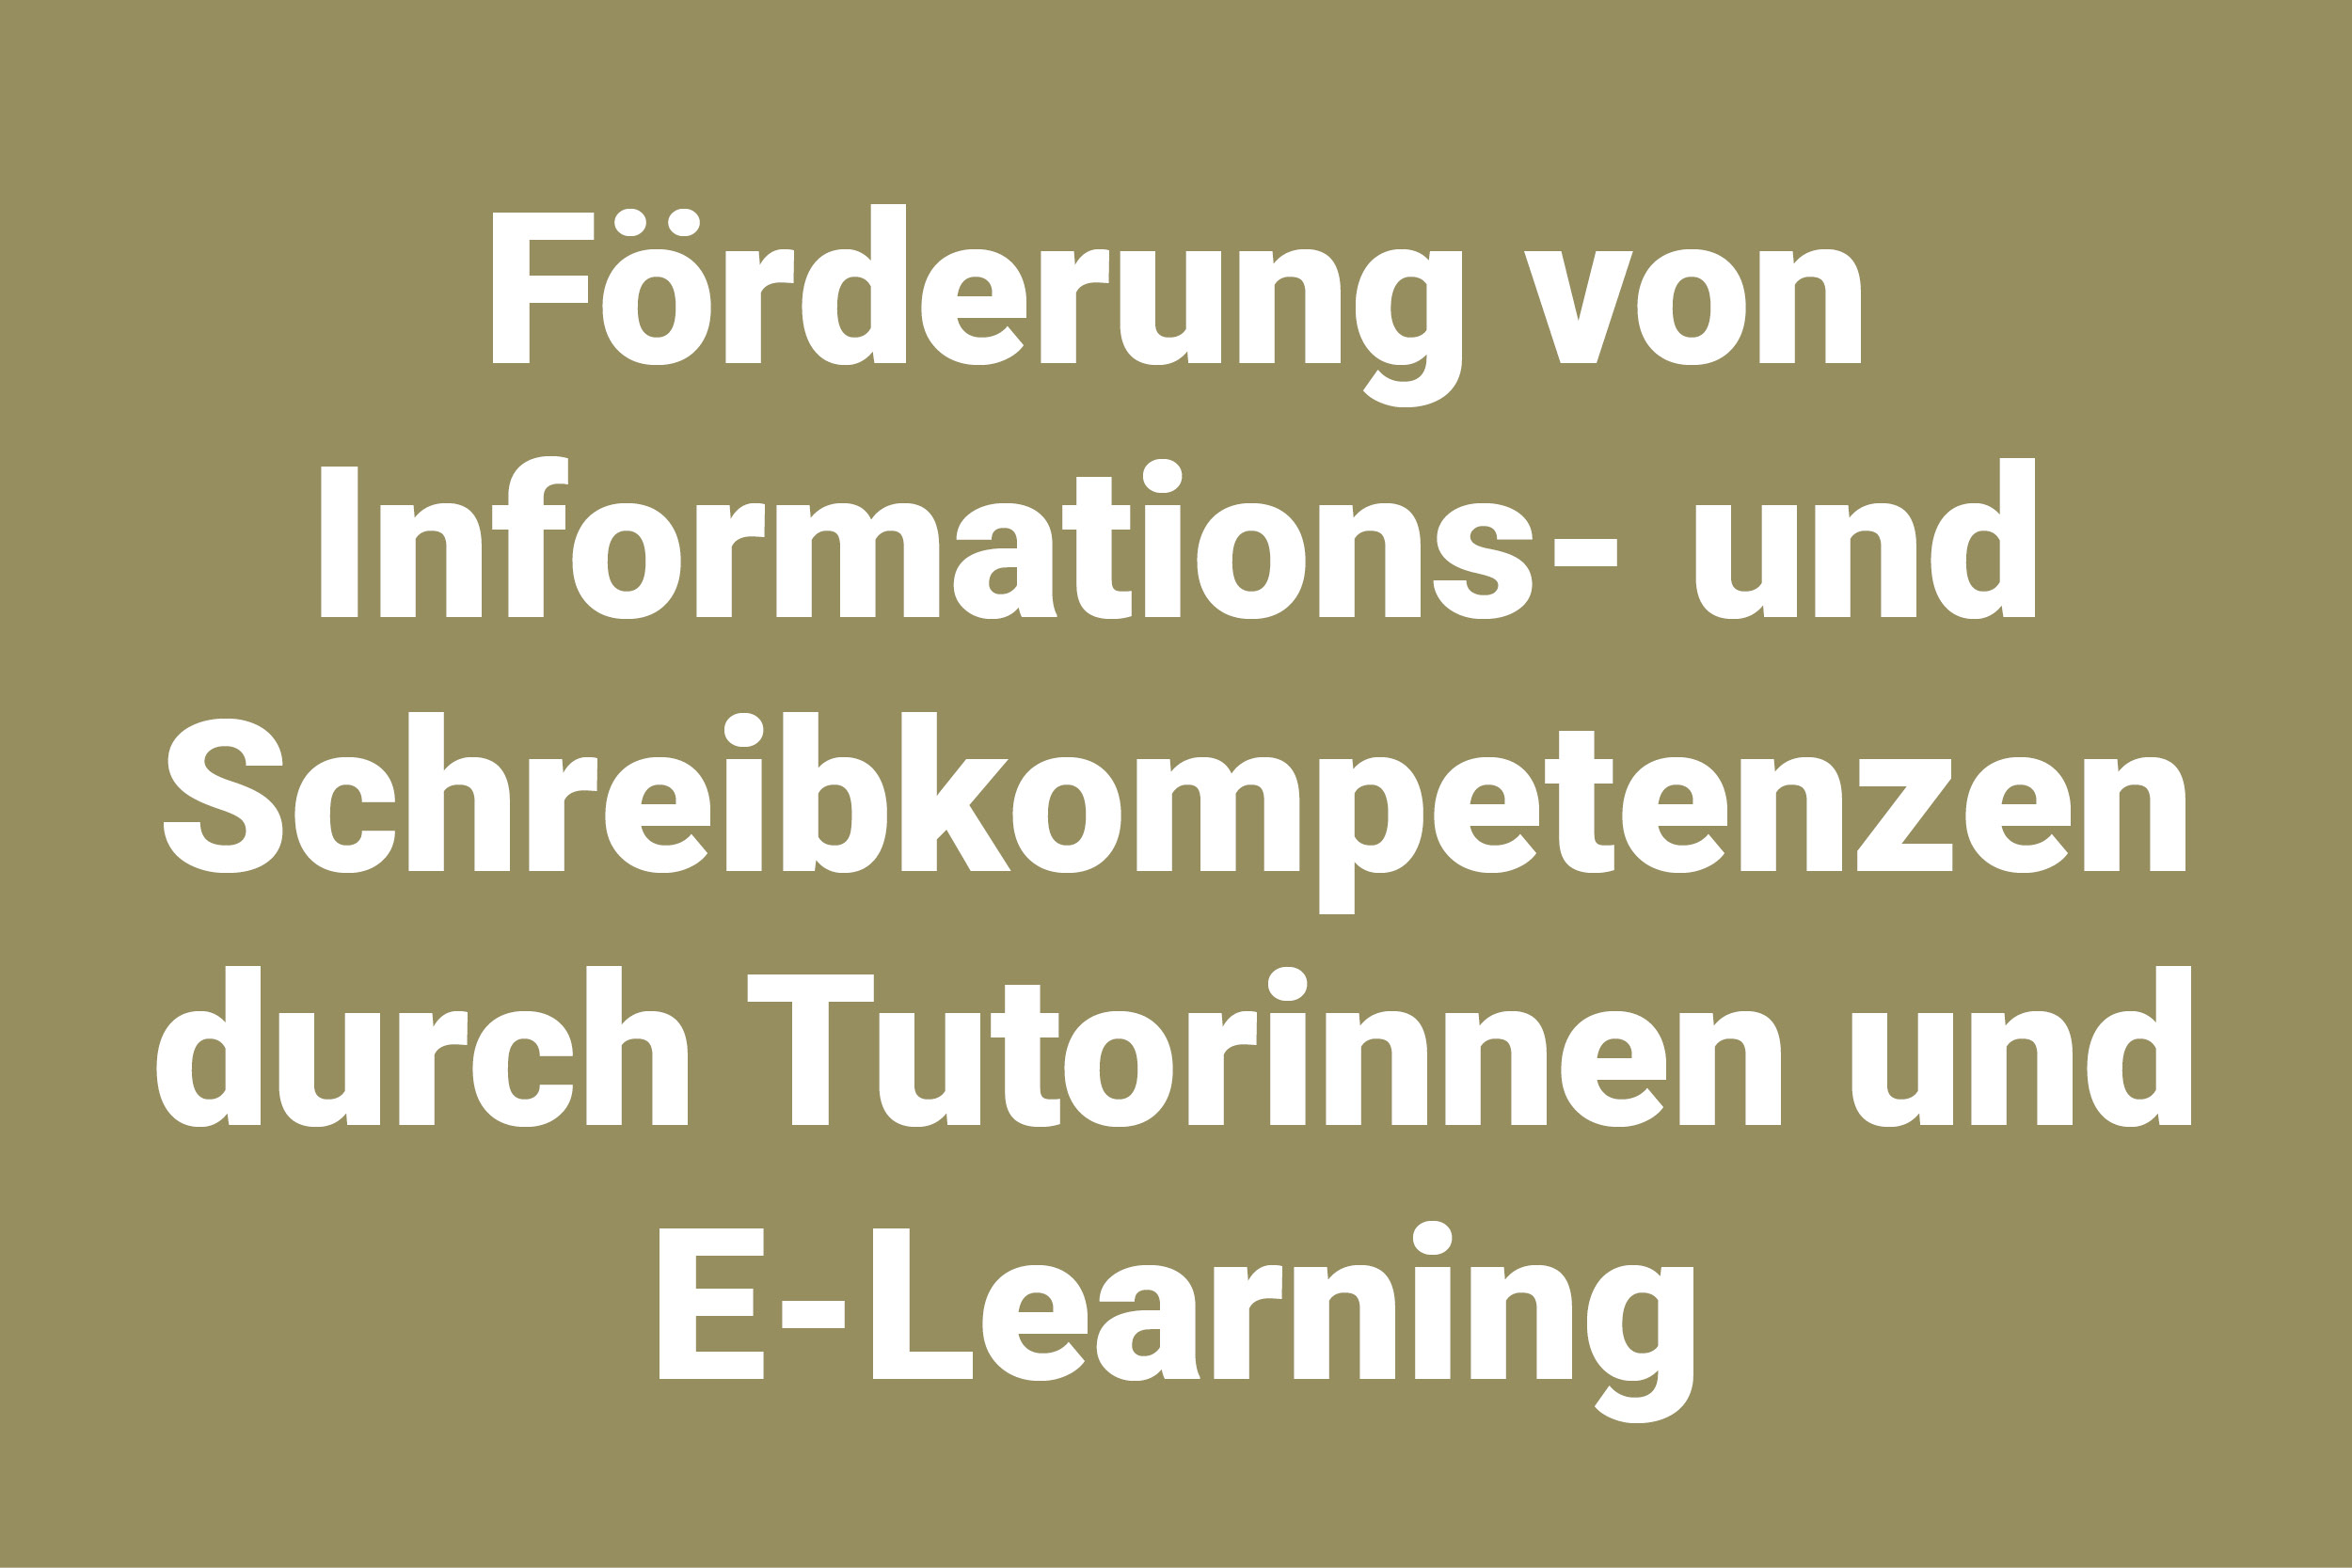 Förderung von Informations- und Schreibkompetenzen durch Tutorinnen und E-Learning